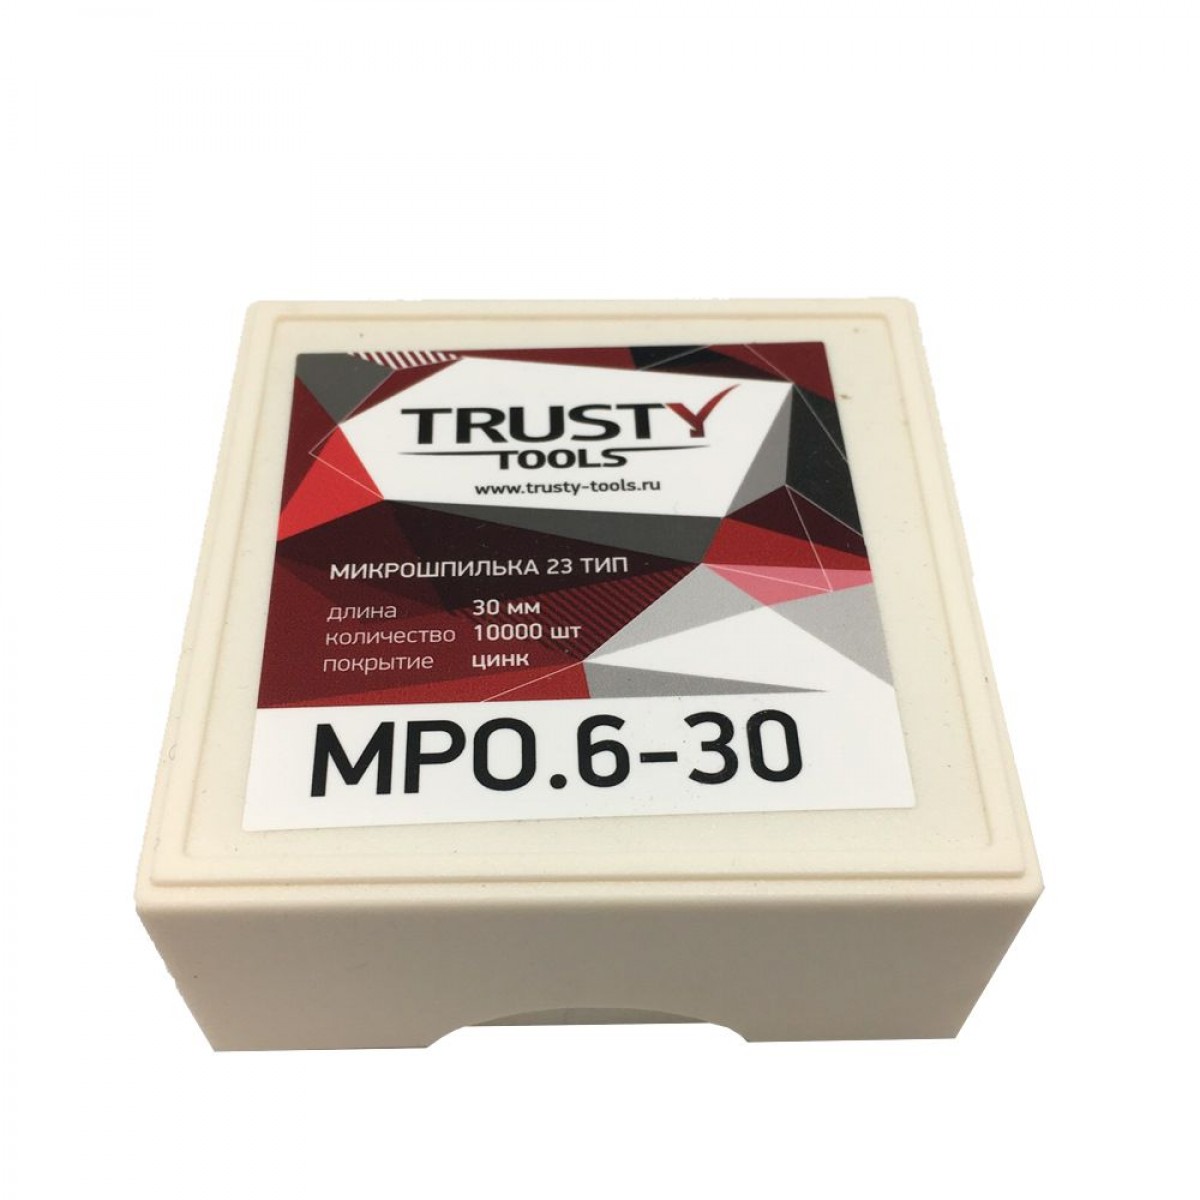 Микрошпилька Trusty 30 мм MPO.6-30 тип 23ga, 23, MP, SP, AL, 10000 шт